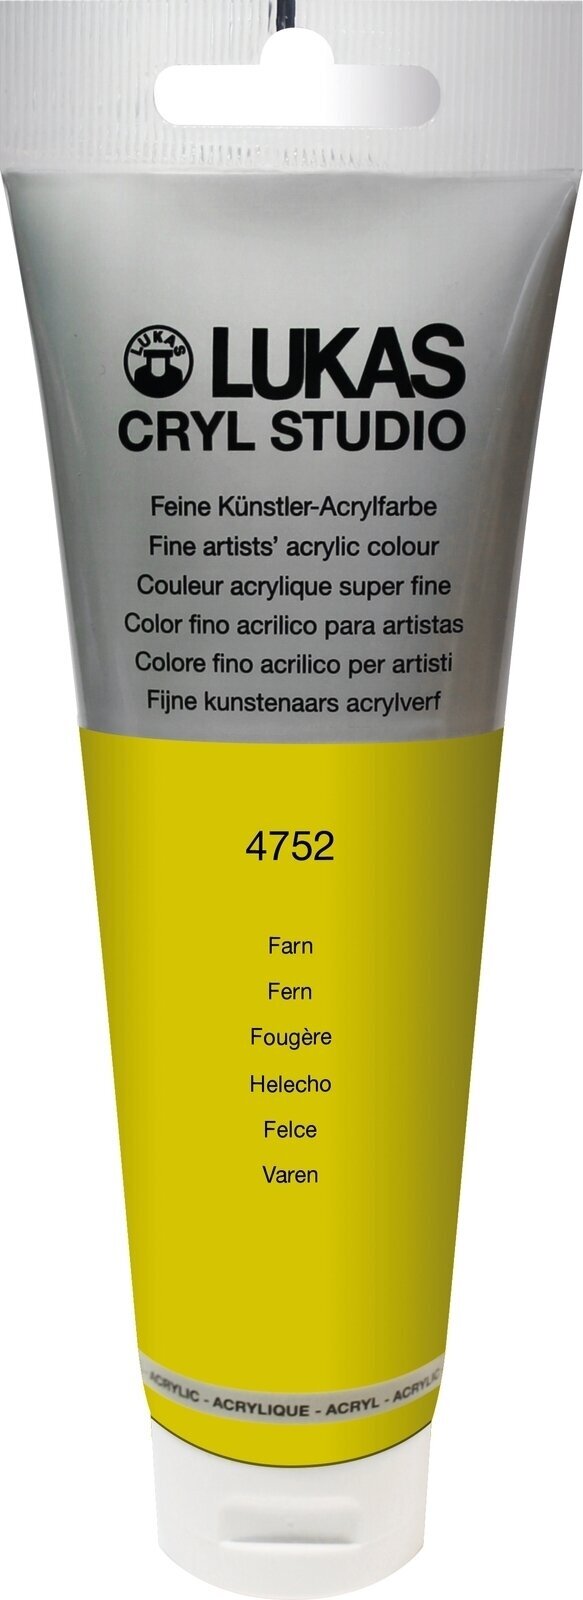 Tinta acrílica Lukas Cryl Studio Acrylic Paint Plastic Tube Tinta acrílica Fern 125 ml 1 un.